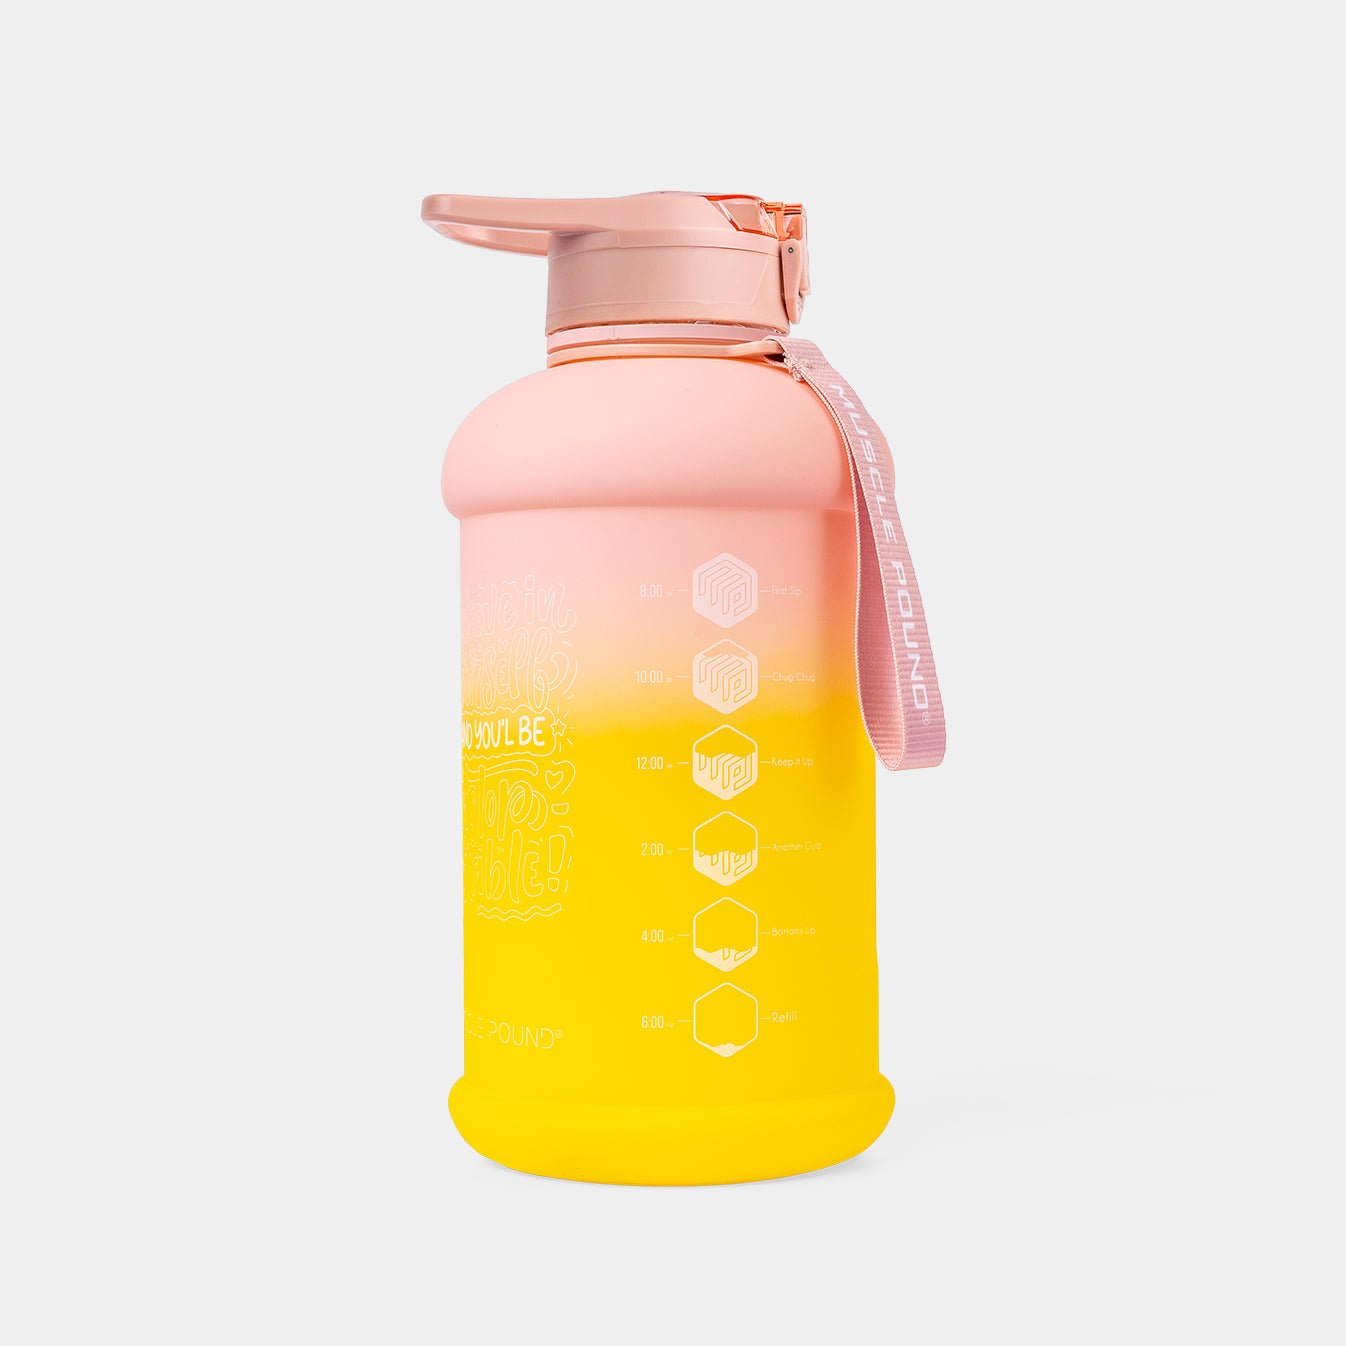 Rafraîchissement radieux : bouteille jaune de 75 oz par Muscle Pound